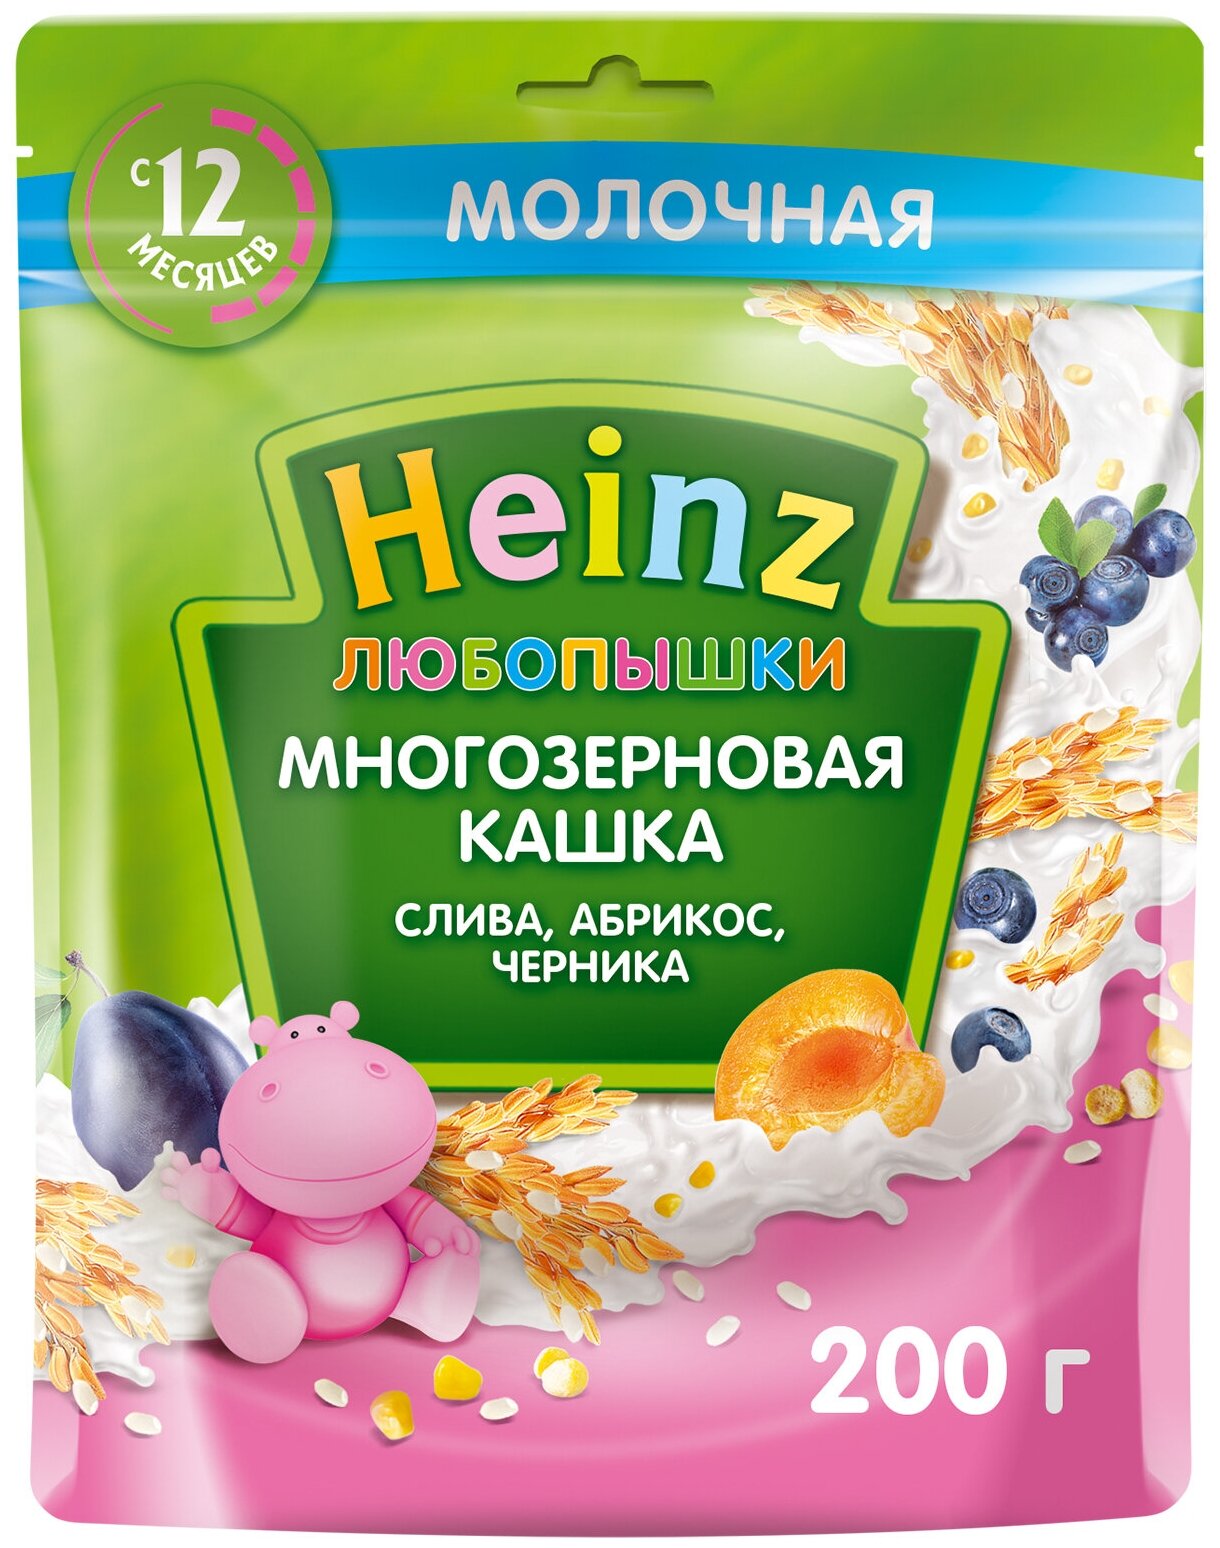 Каша Heinz, Любопышки молочная многозерновая слива, абрикос, черника 200 г - фото №2